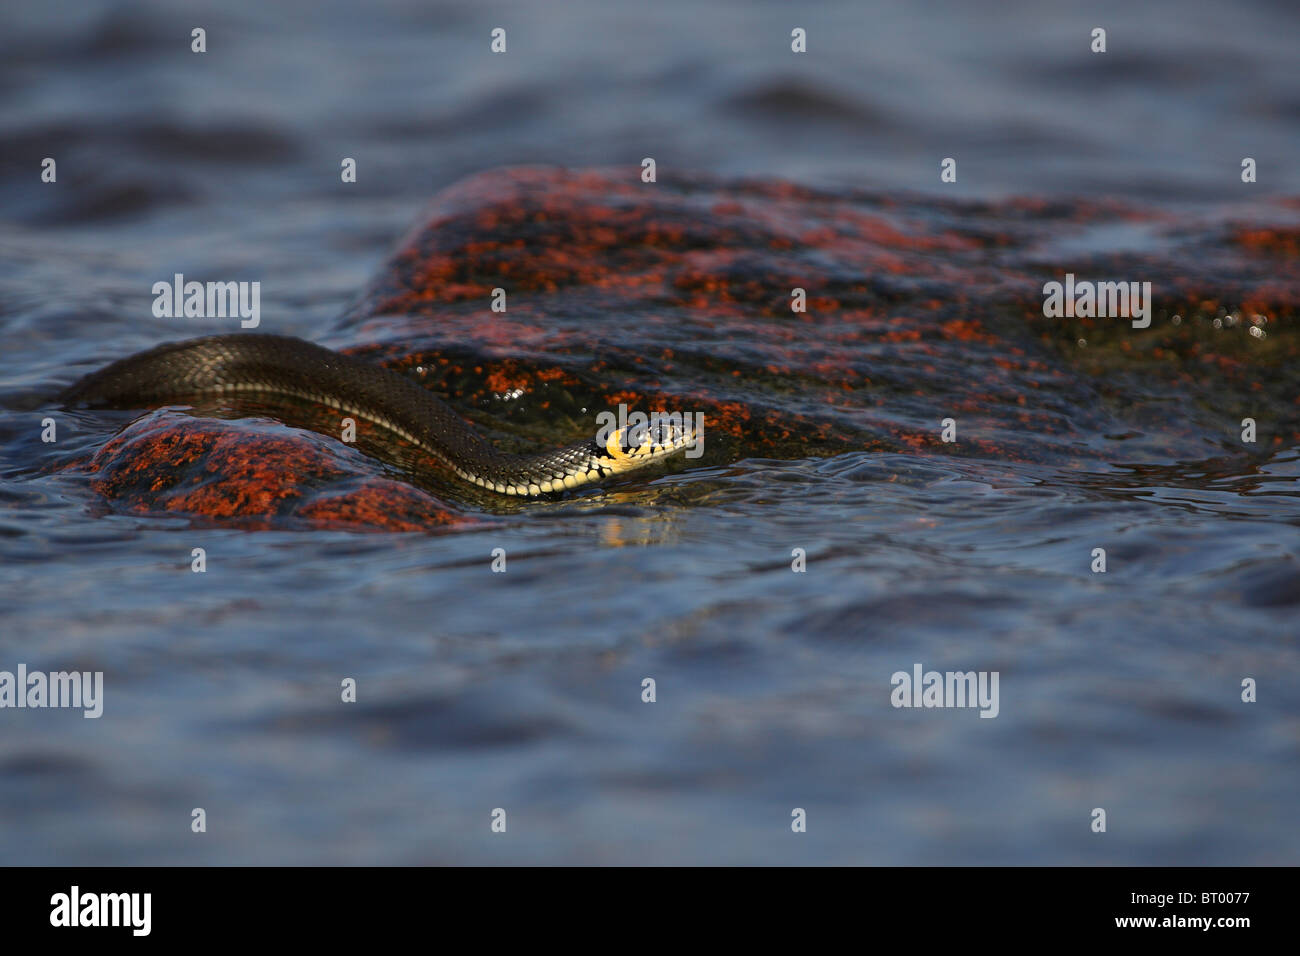 Grass Snake (Natrix natrix) swimming in the sea. Estonia, Europe. Stock Photo